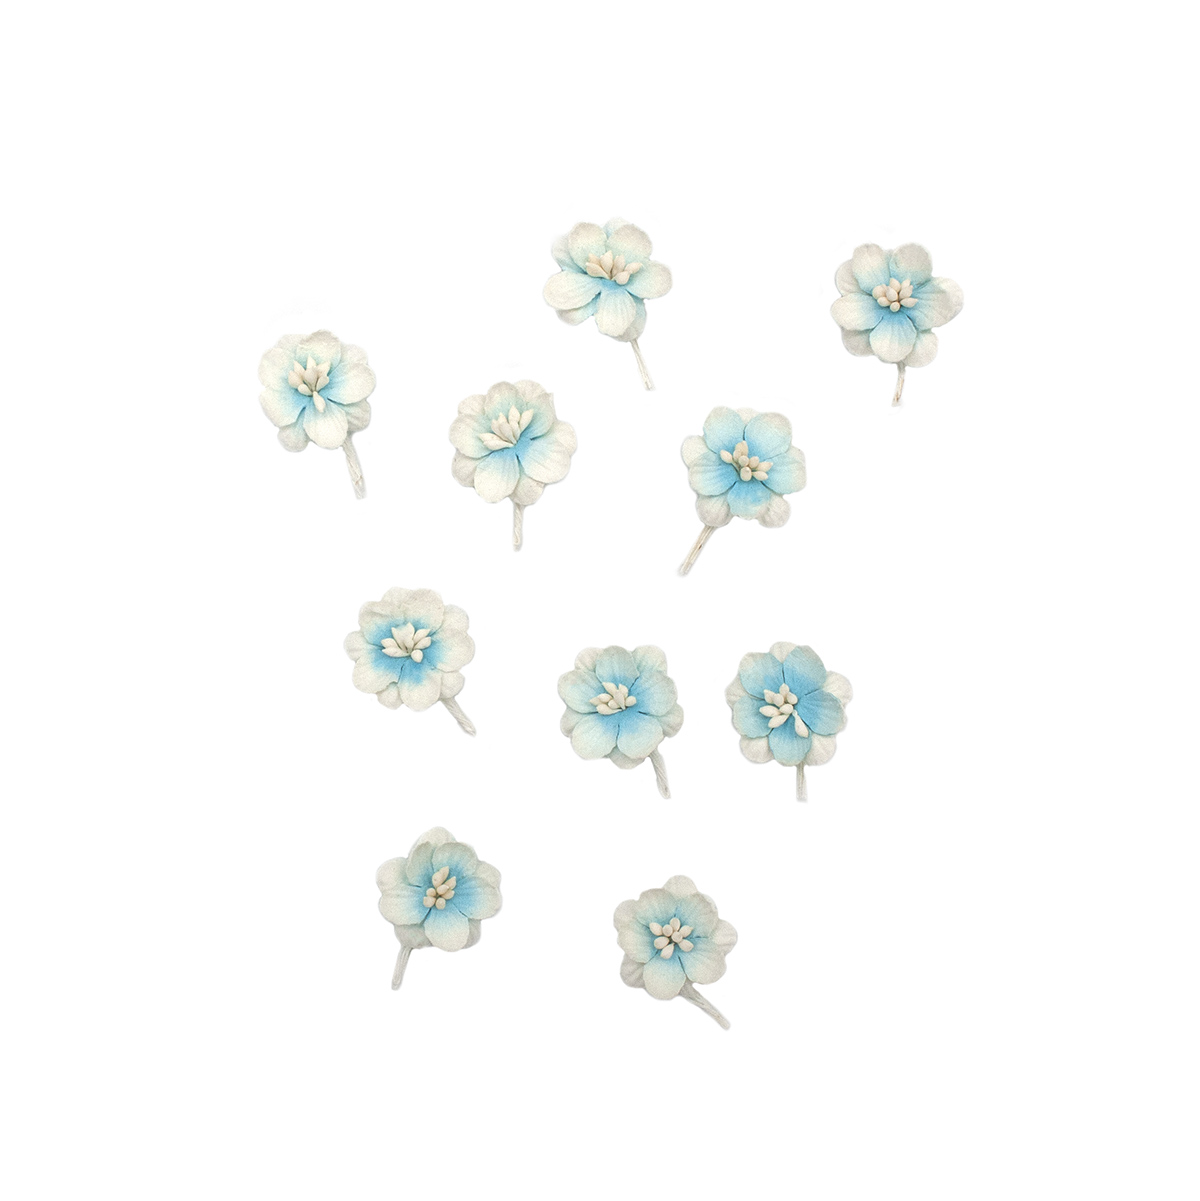 фото Scb3002 набор цветки вишни из бумаги, упак./10 шт. (10 небесно-белый) scrapberry's